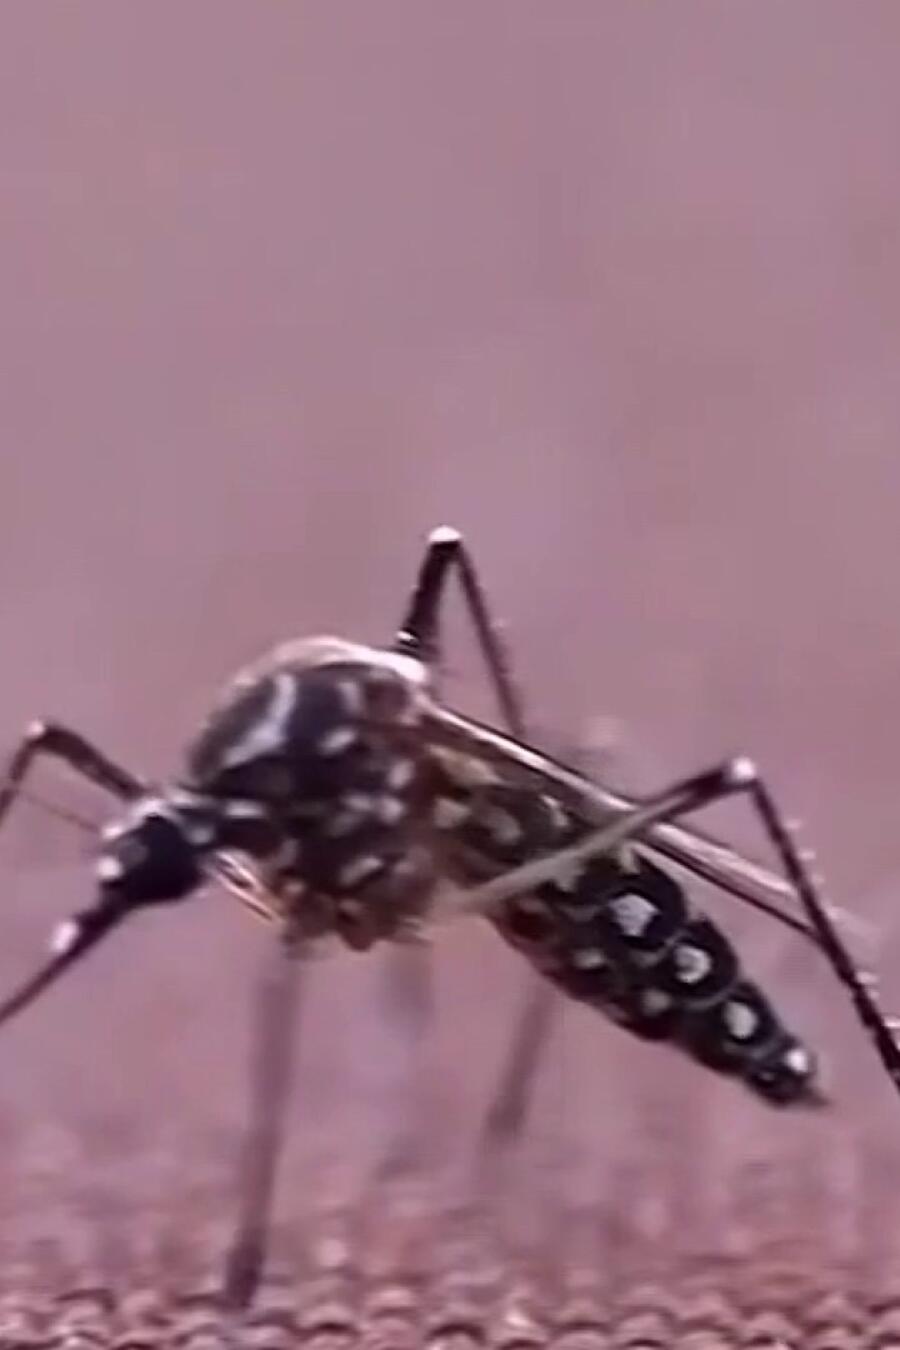 Buscan disminuir plagas en Los Ángeles a través de mosquitos modificados en laboratorio